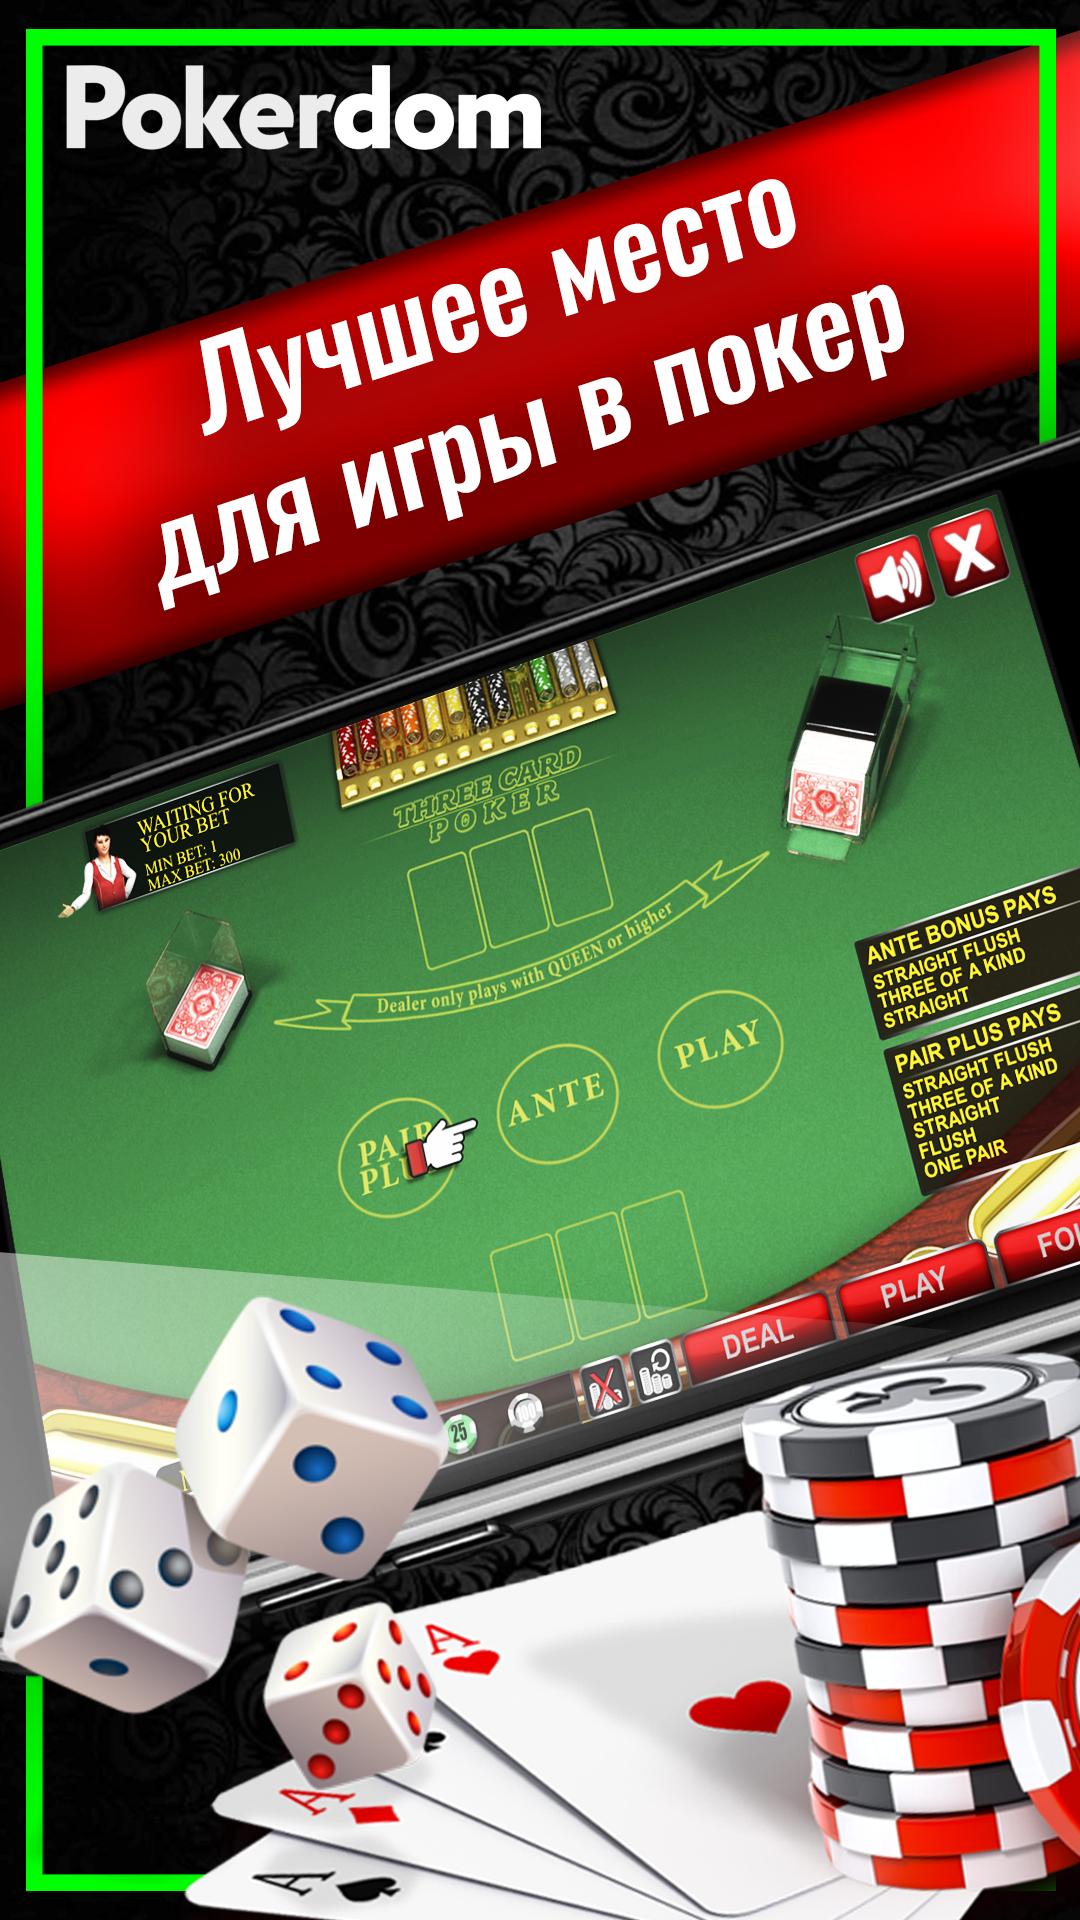 Покер дом играть онлайн во самый прогнозируемый спорт для ставок